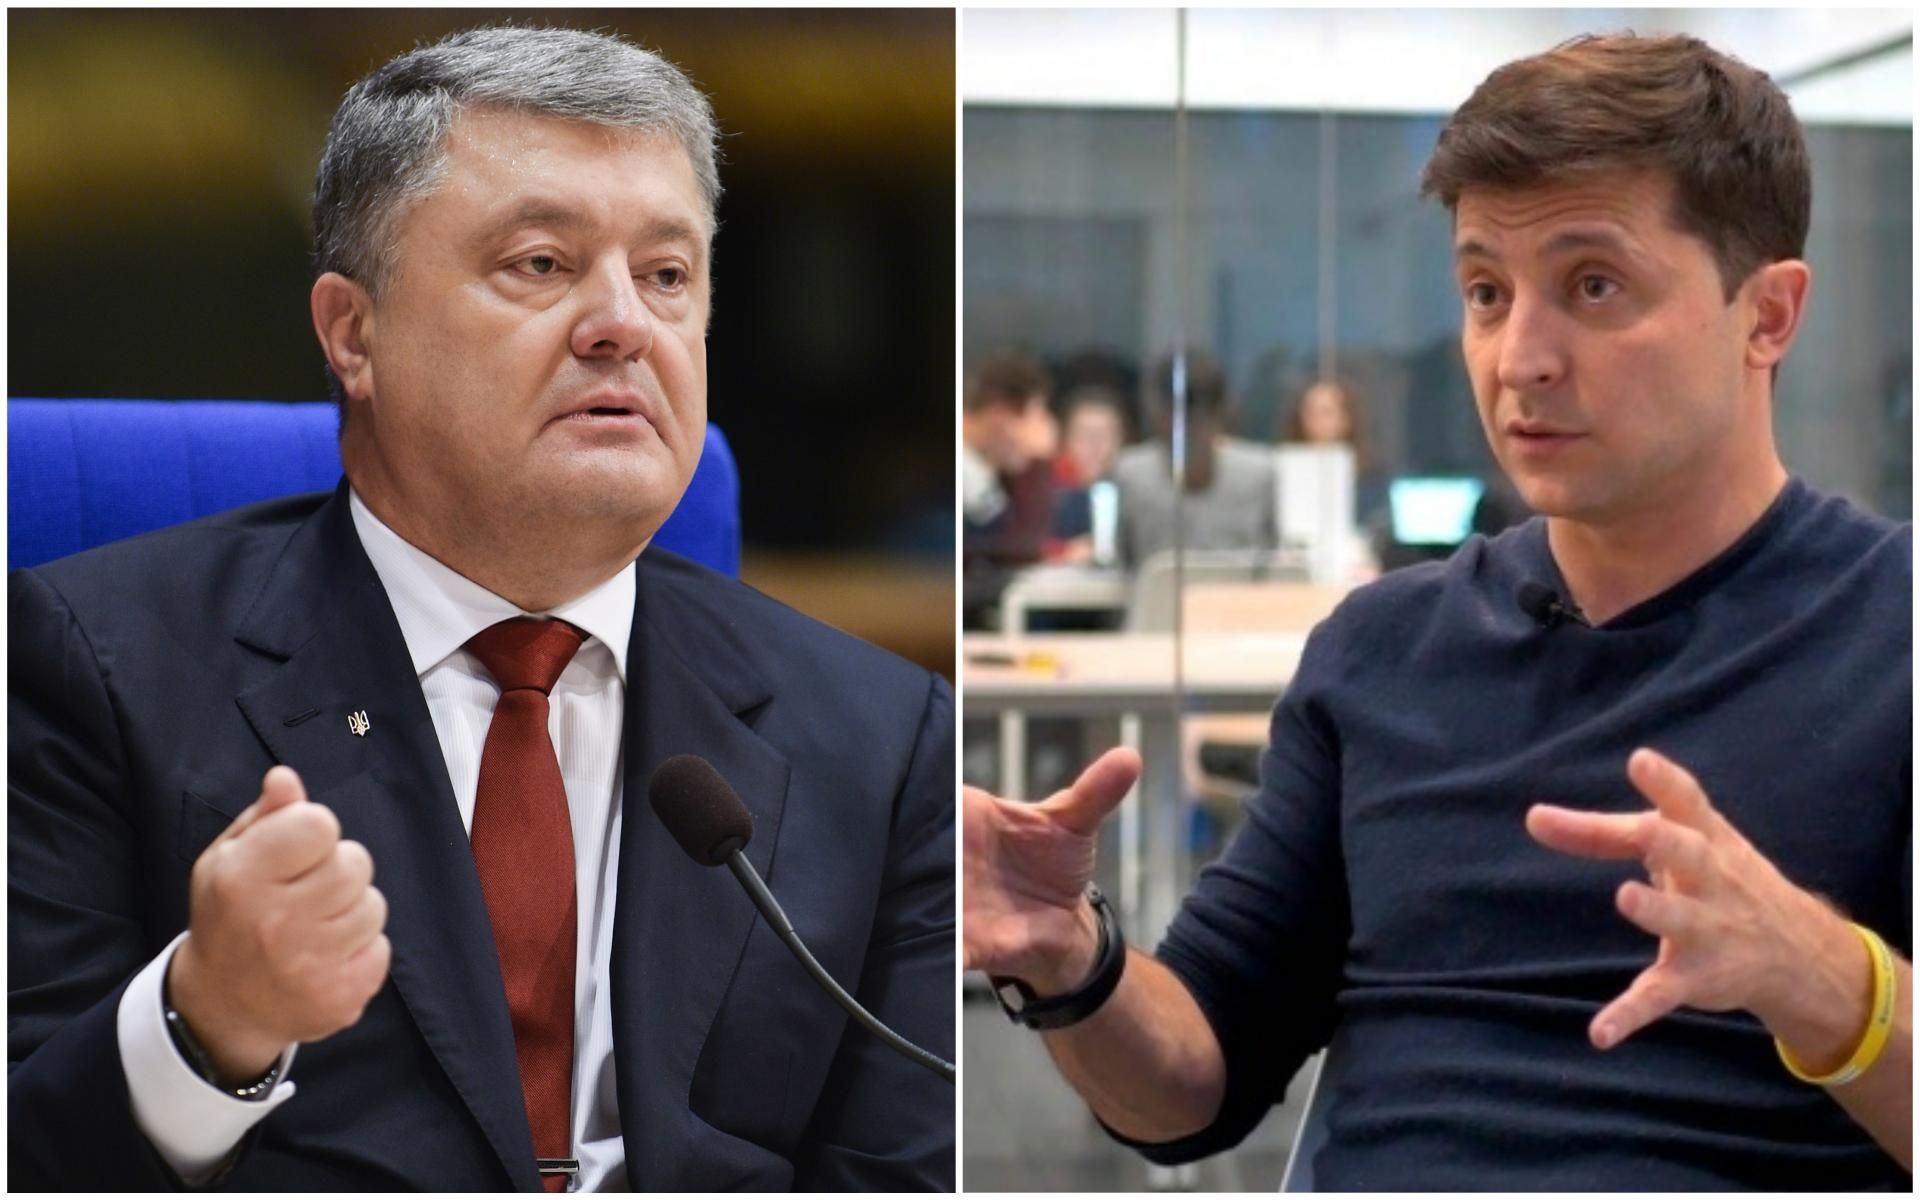 Дебаты Порошенко и Зеленского - дата и прогноз на дебаты кандидатов в президенты 2019